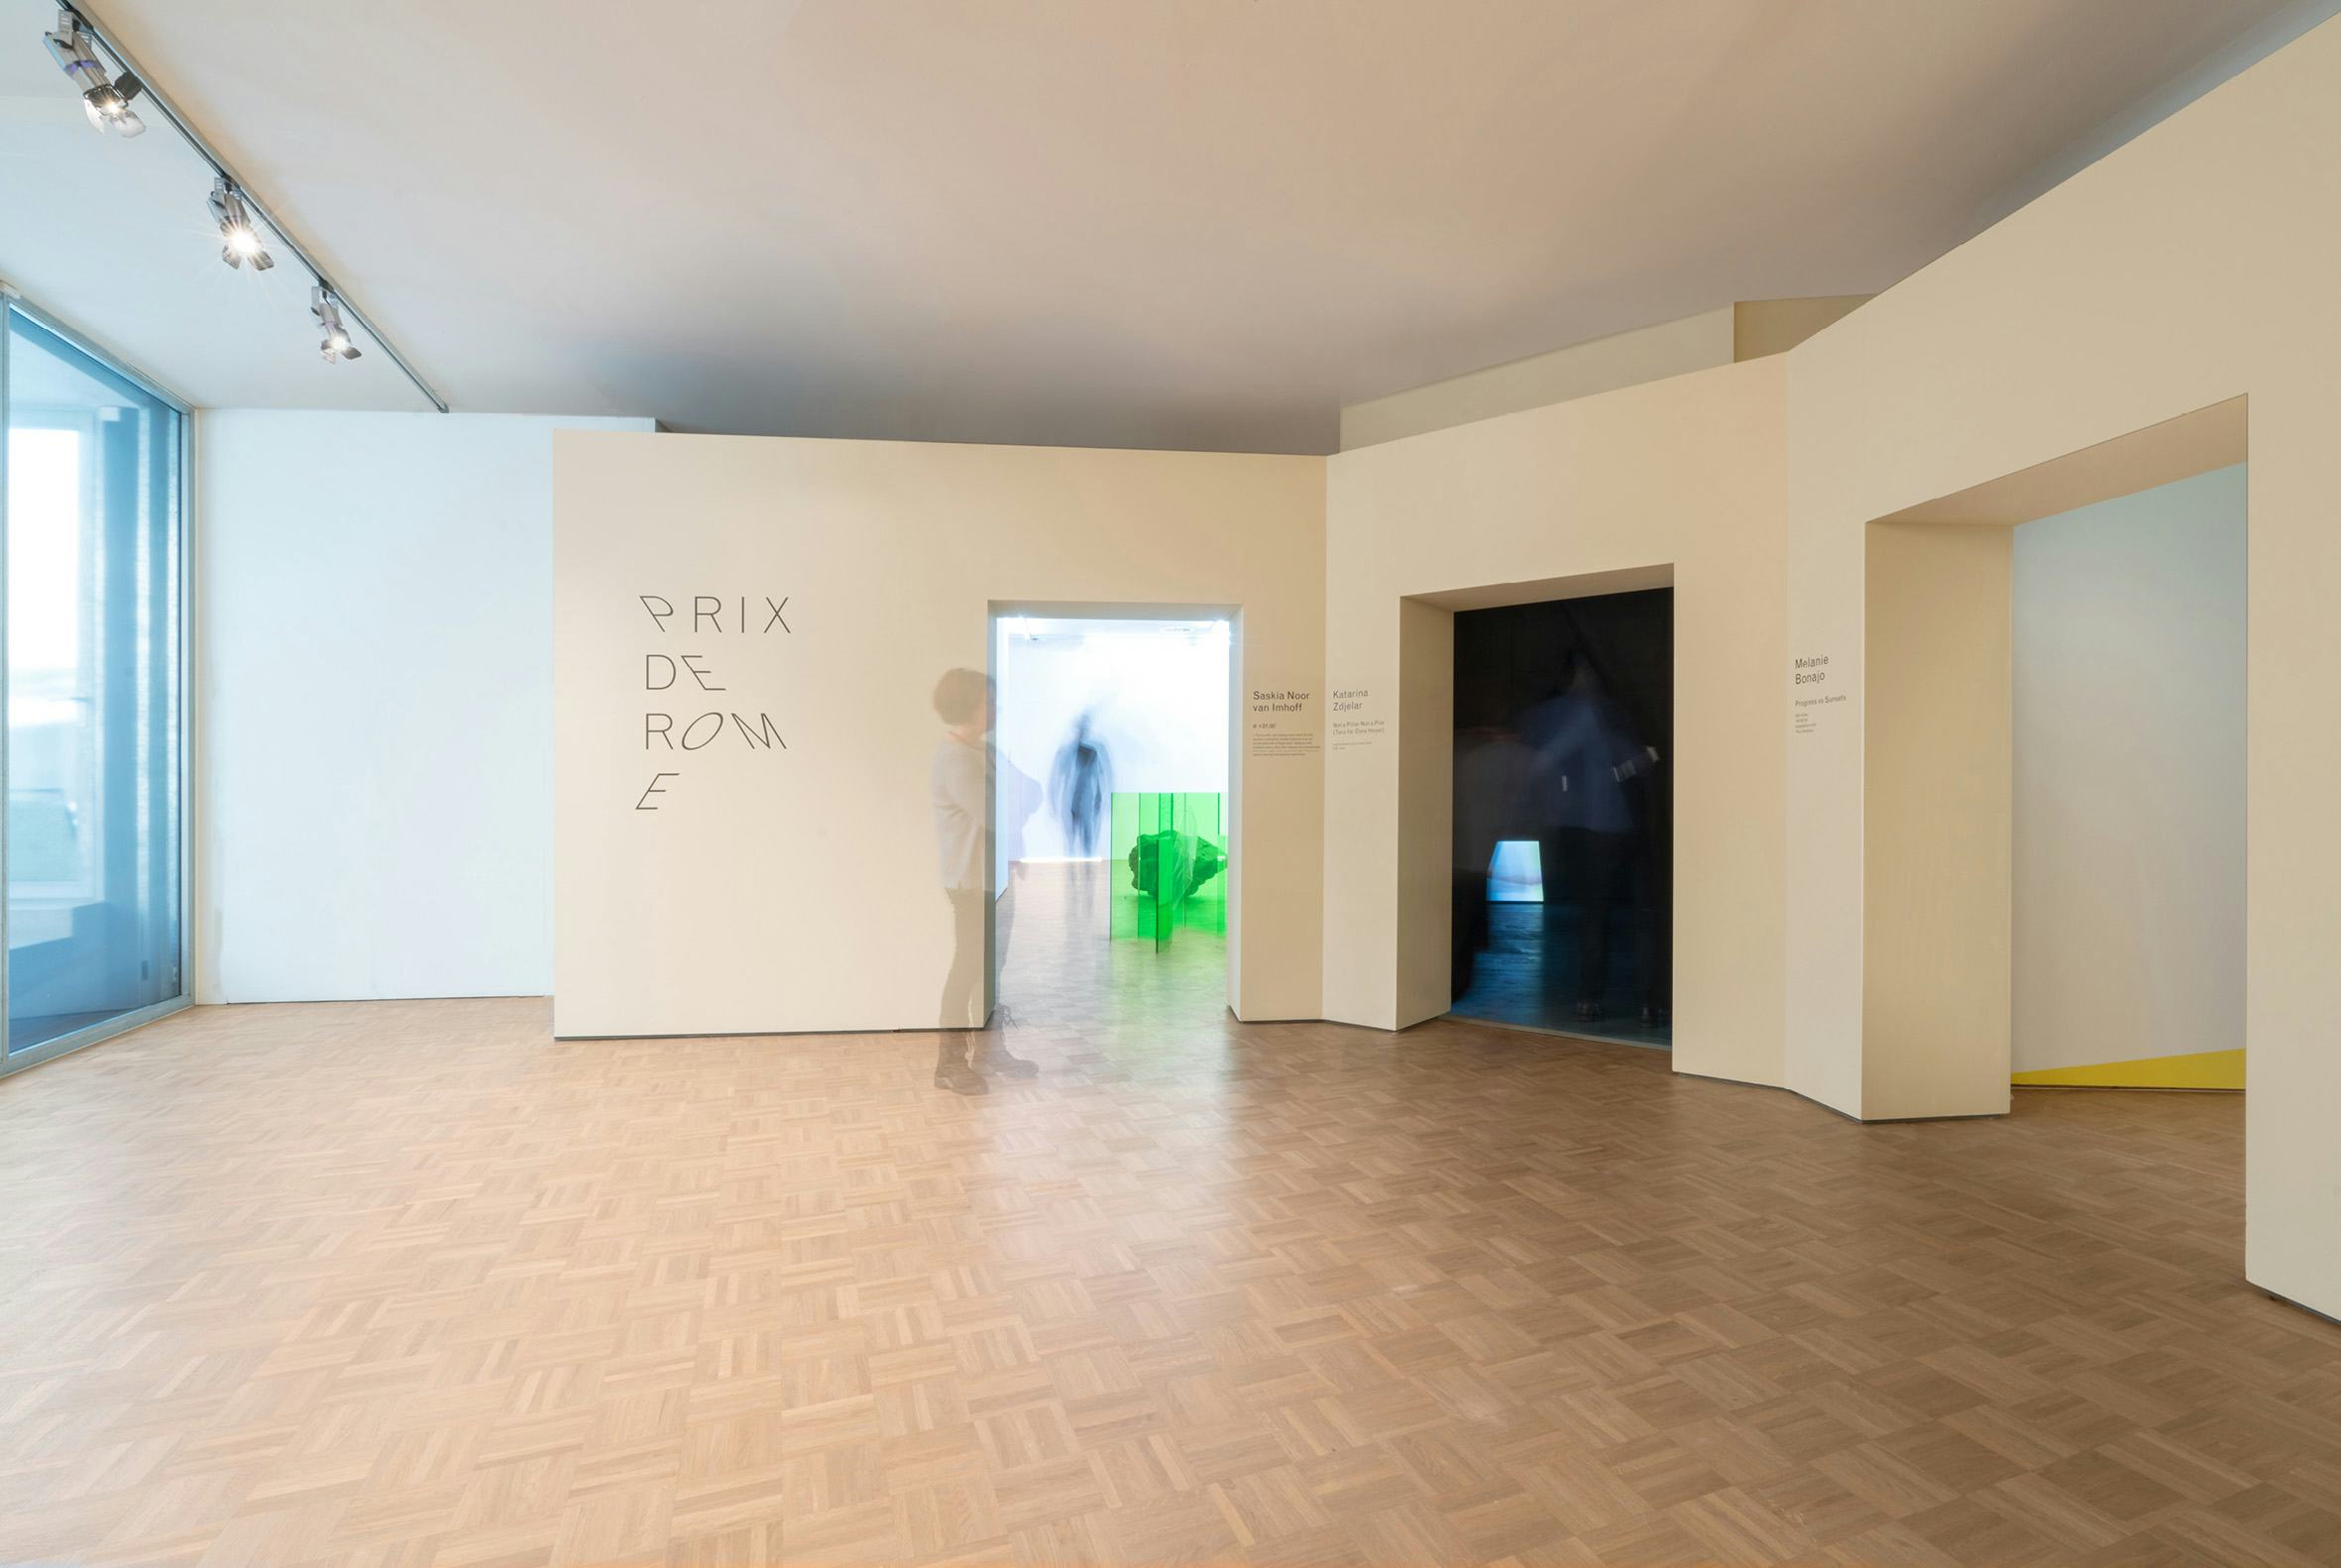 Entree tentoonstellingsruimtes Prix de Rome 2017, beeld Donna van Milligen Bielke